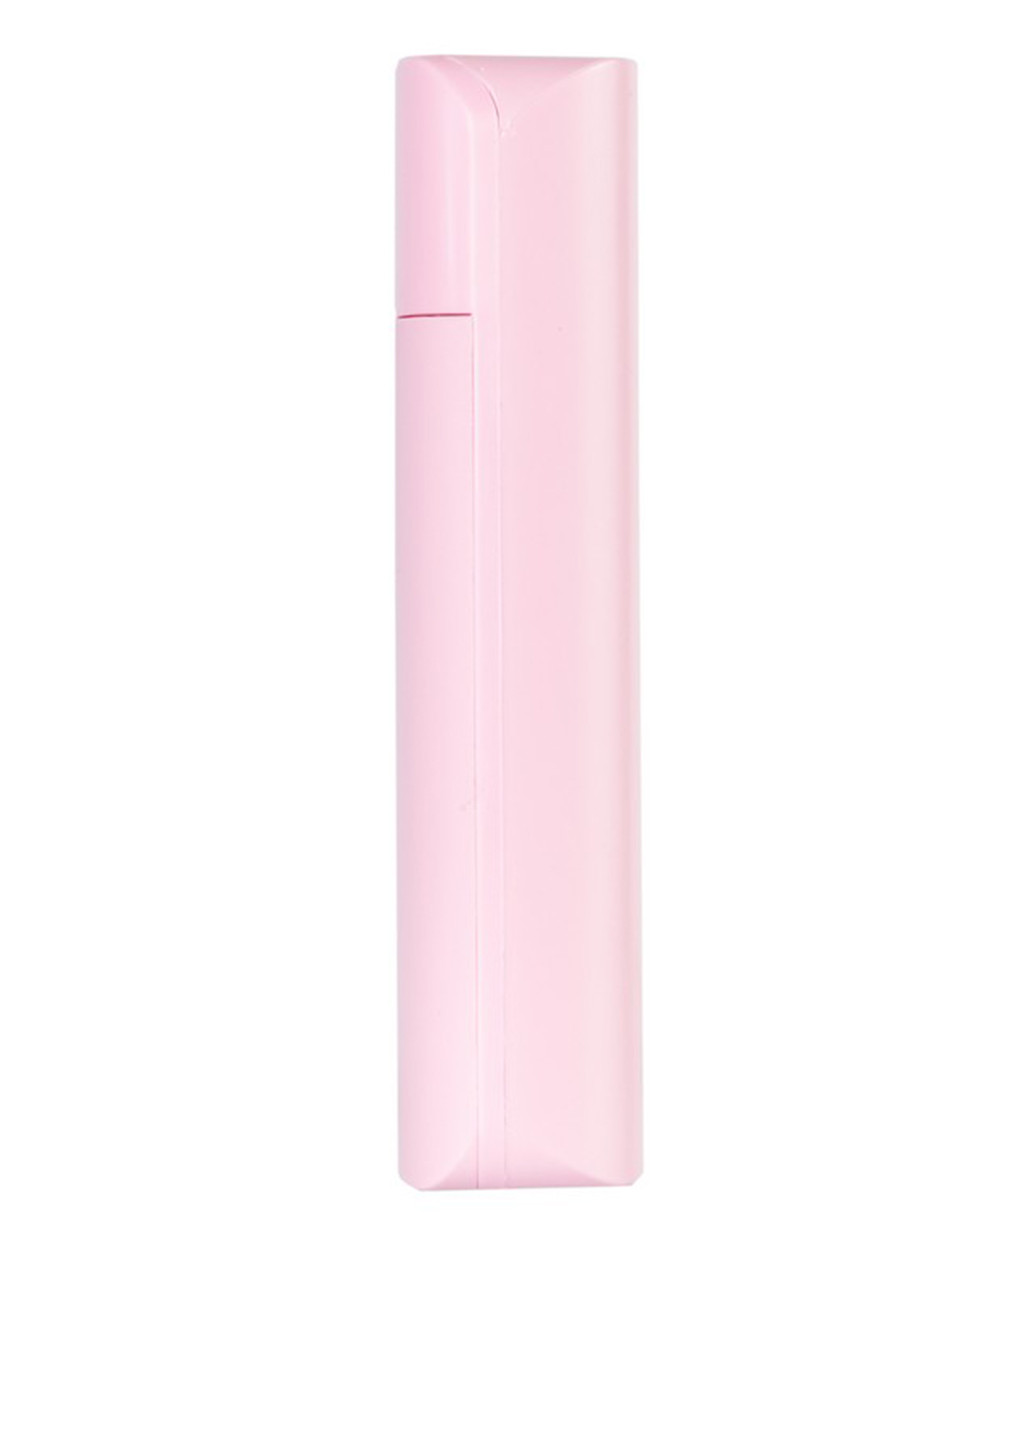 Универсальная батарея 6000mAh Pink (павербанк) Optima OPB-6-1